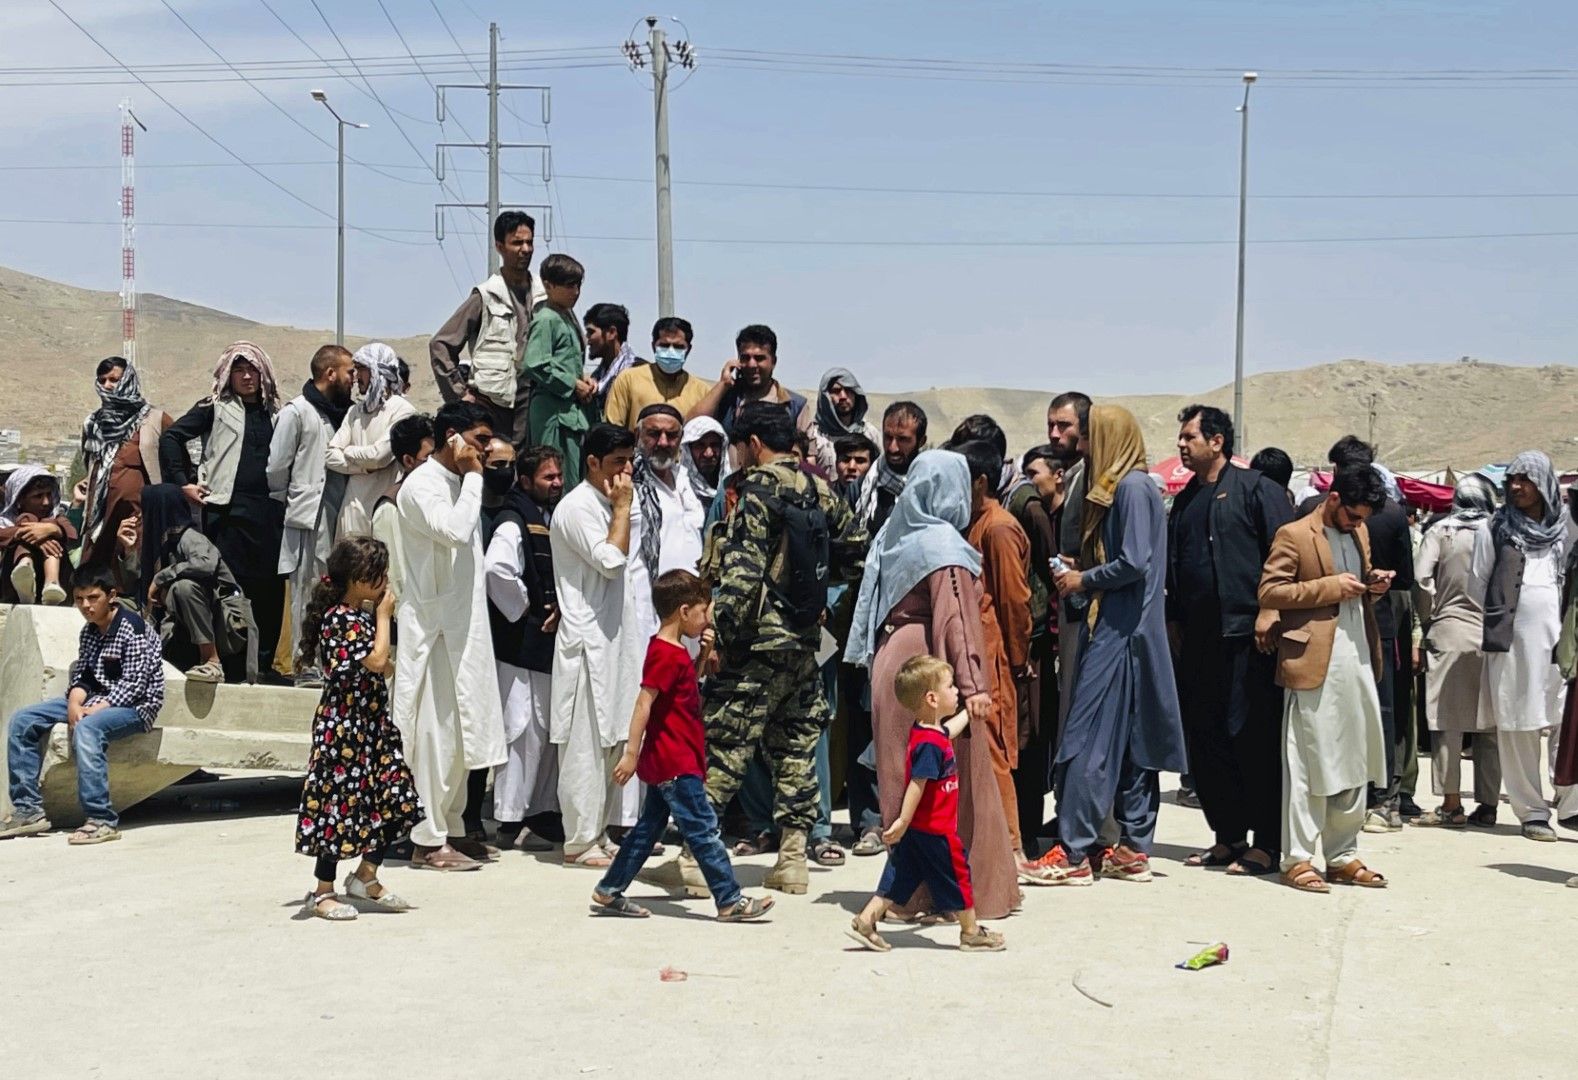 Хиляди хора са се събрали край летището в Кабул в очакване на евакуация. В същото време досегашни ръководители призовават за народна съпротива срещу талибаните